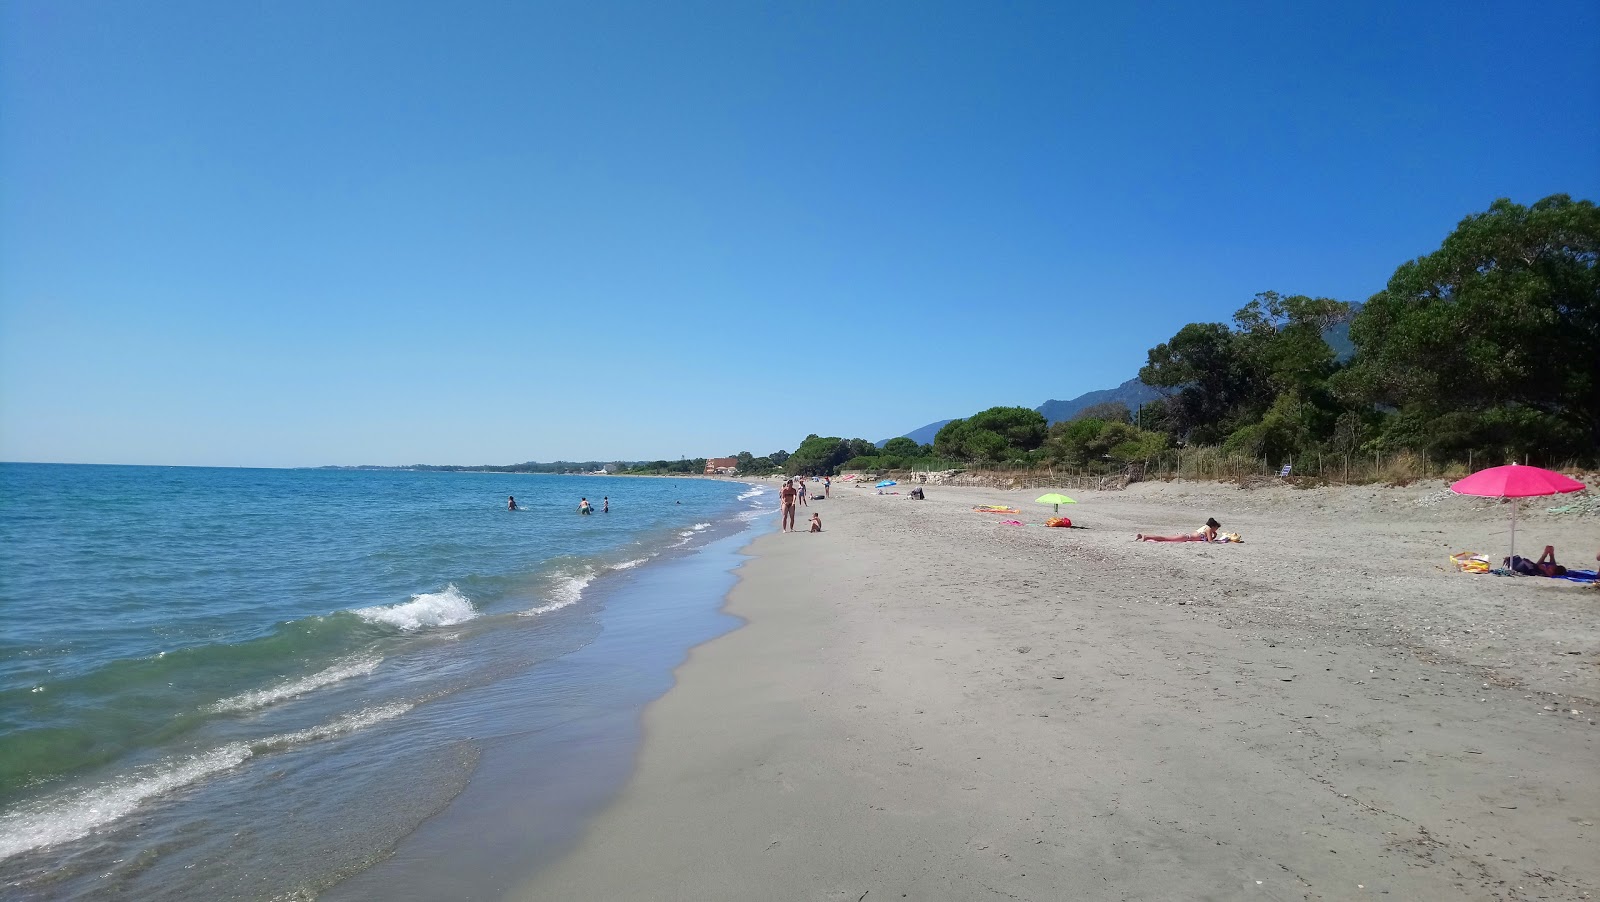 Fotografie cu Ponticchio beach cu o suprafață de nisip strălucitor